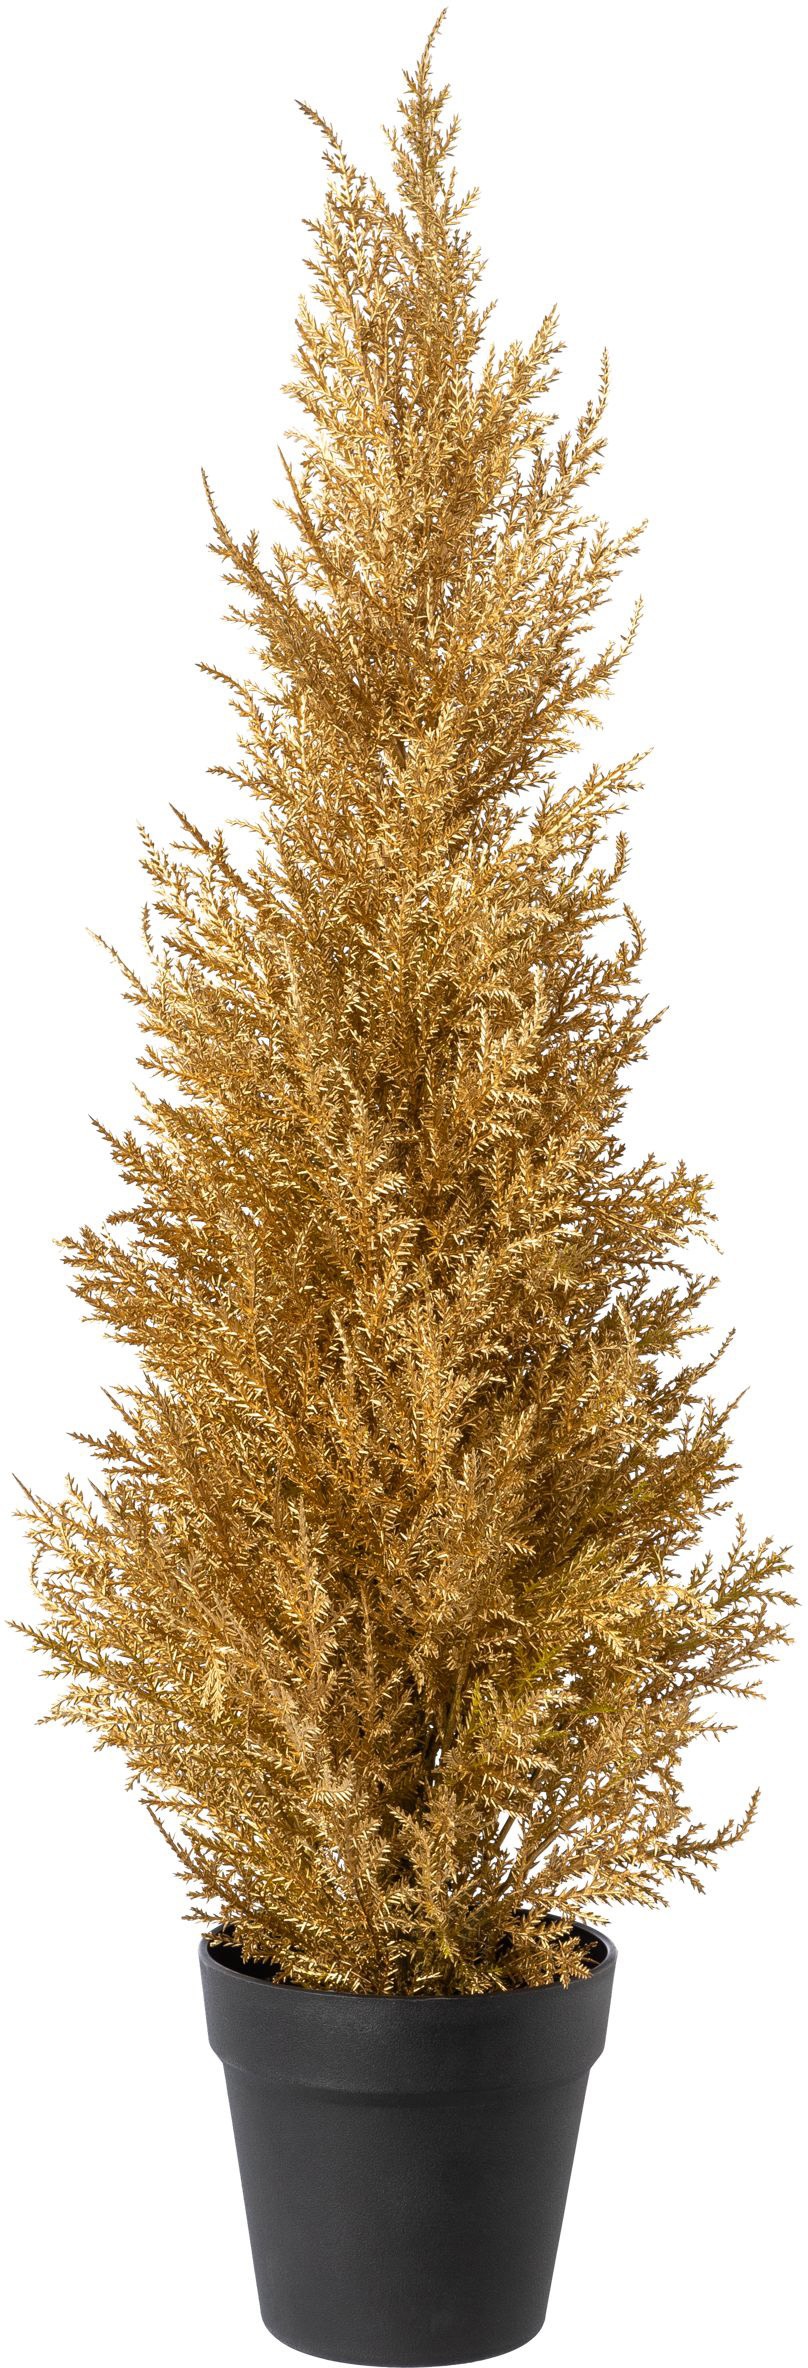 Künstlicher Weihnachtsbaum, mit goldener Farbgebung